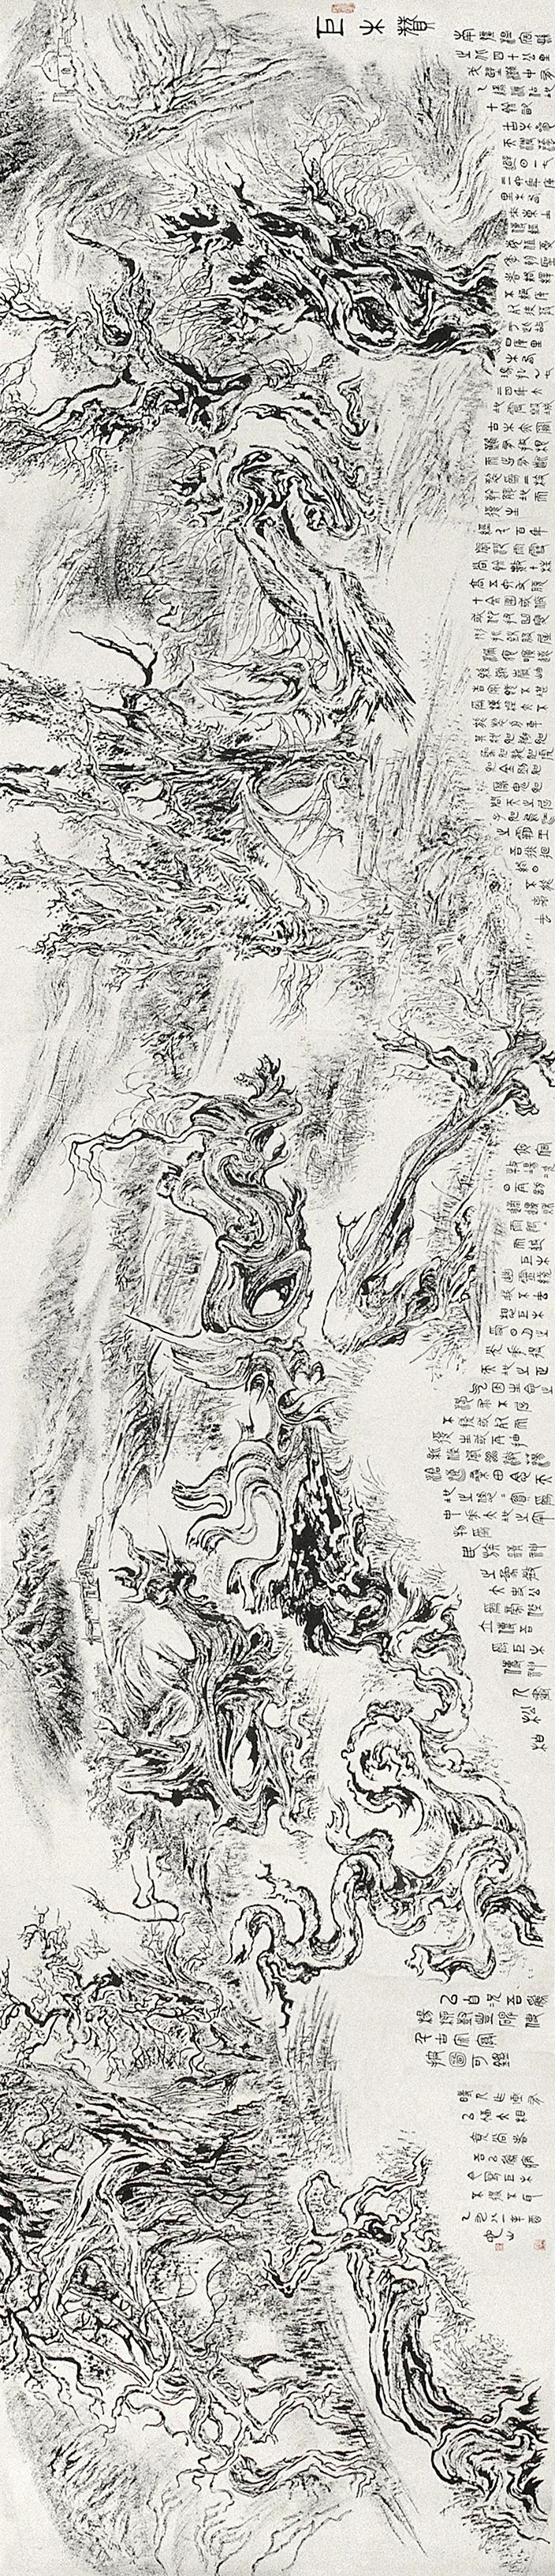 张仃《巨木赞》  94 厘米×440厘米  1981年